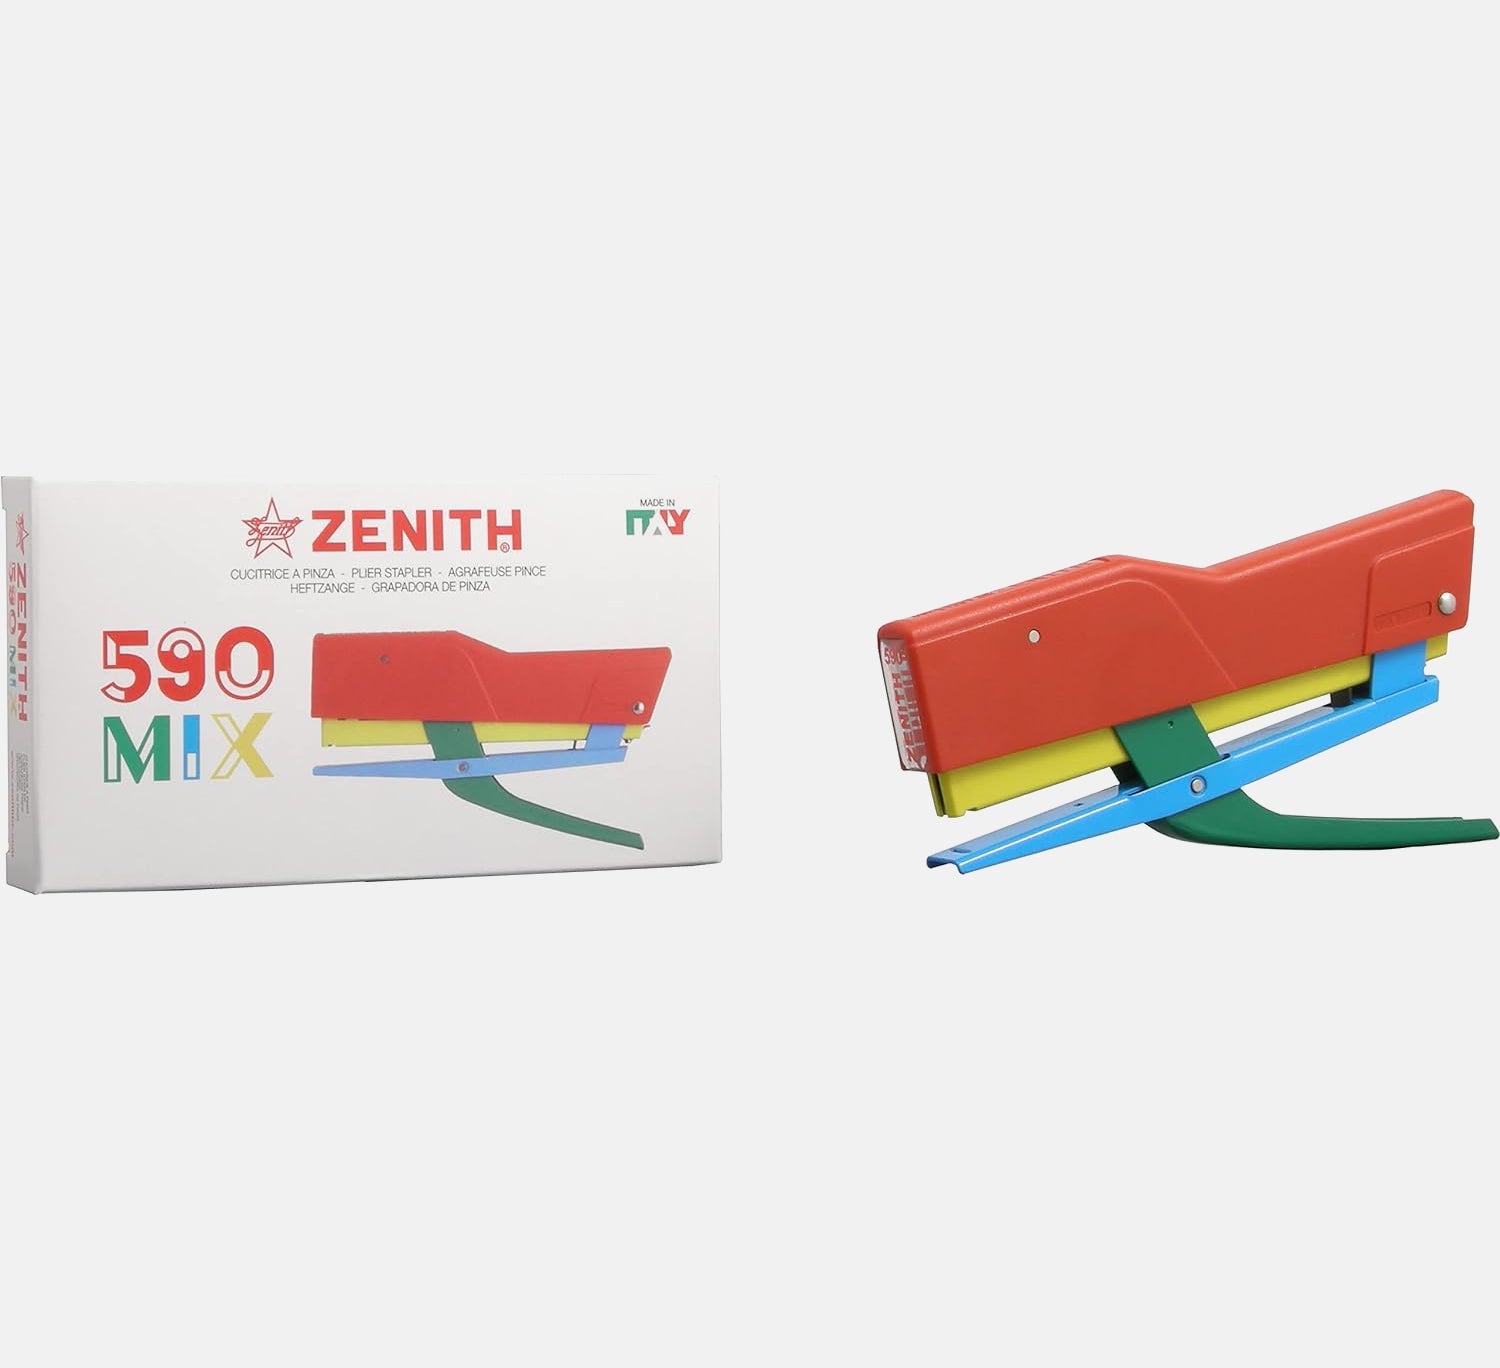 ZENITH 590 - ZENITH